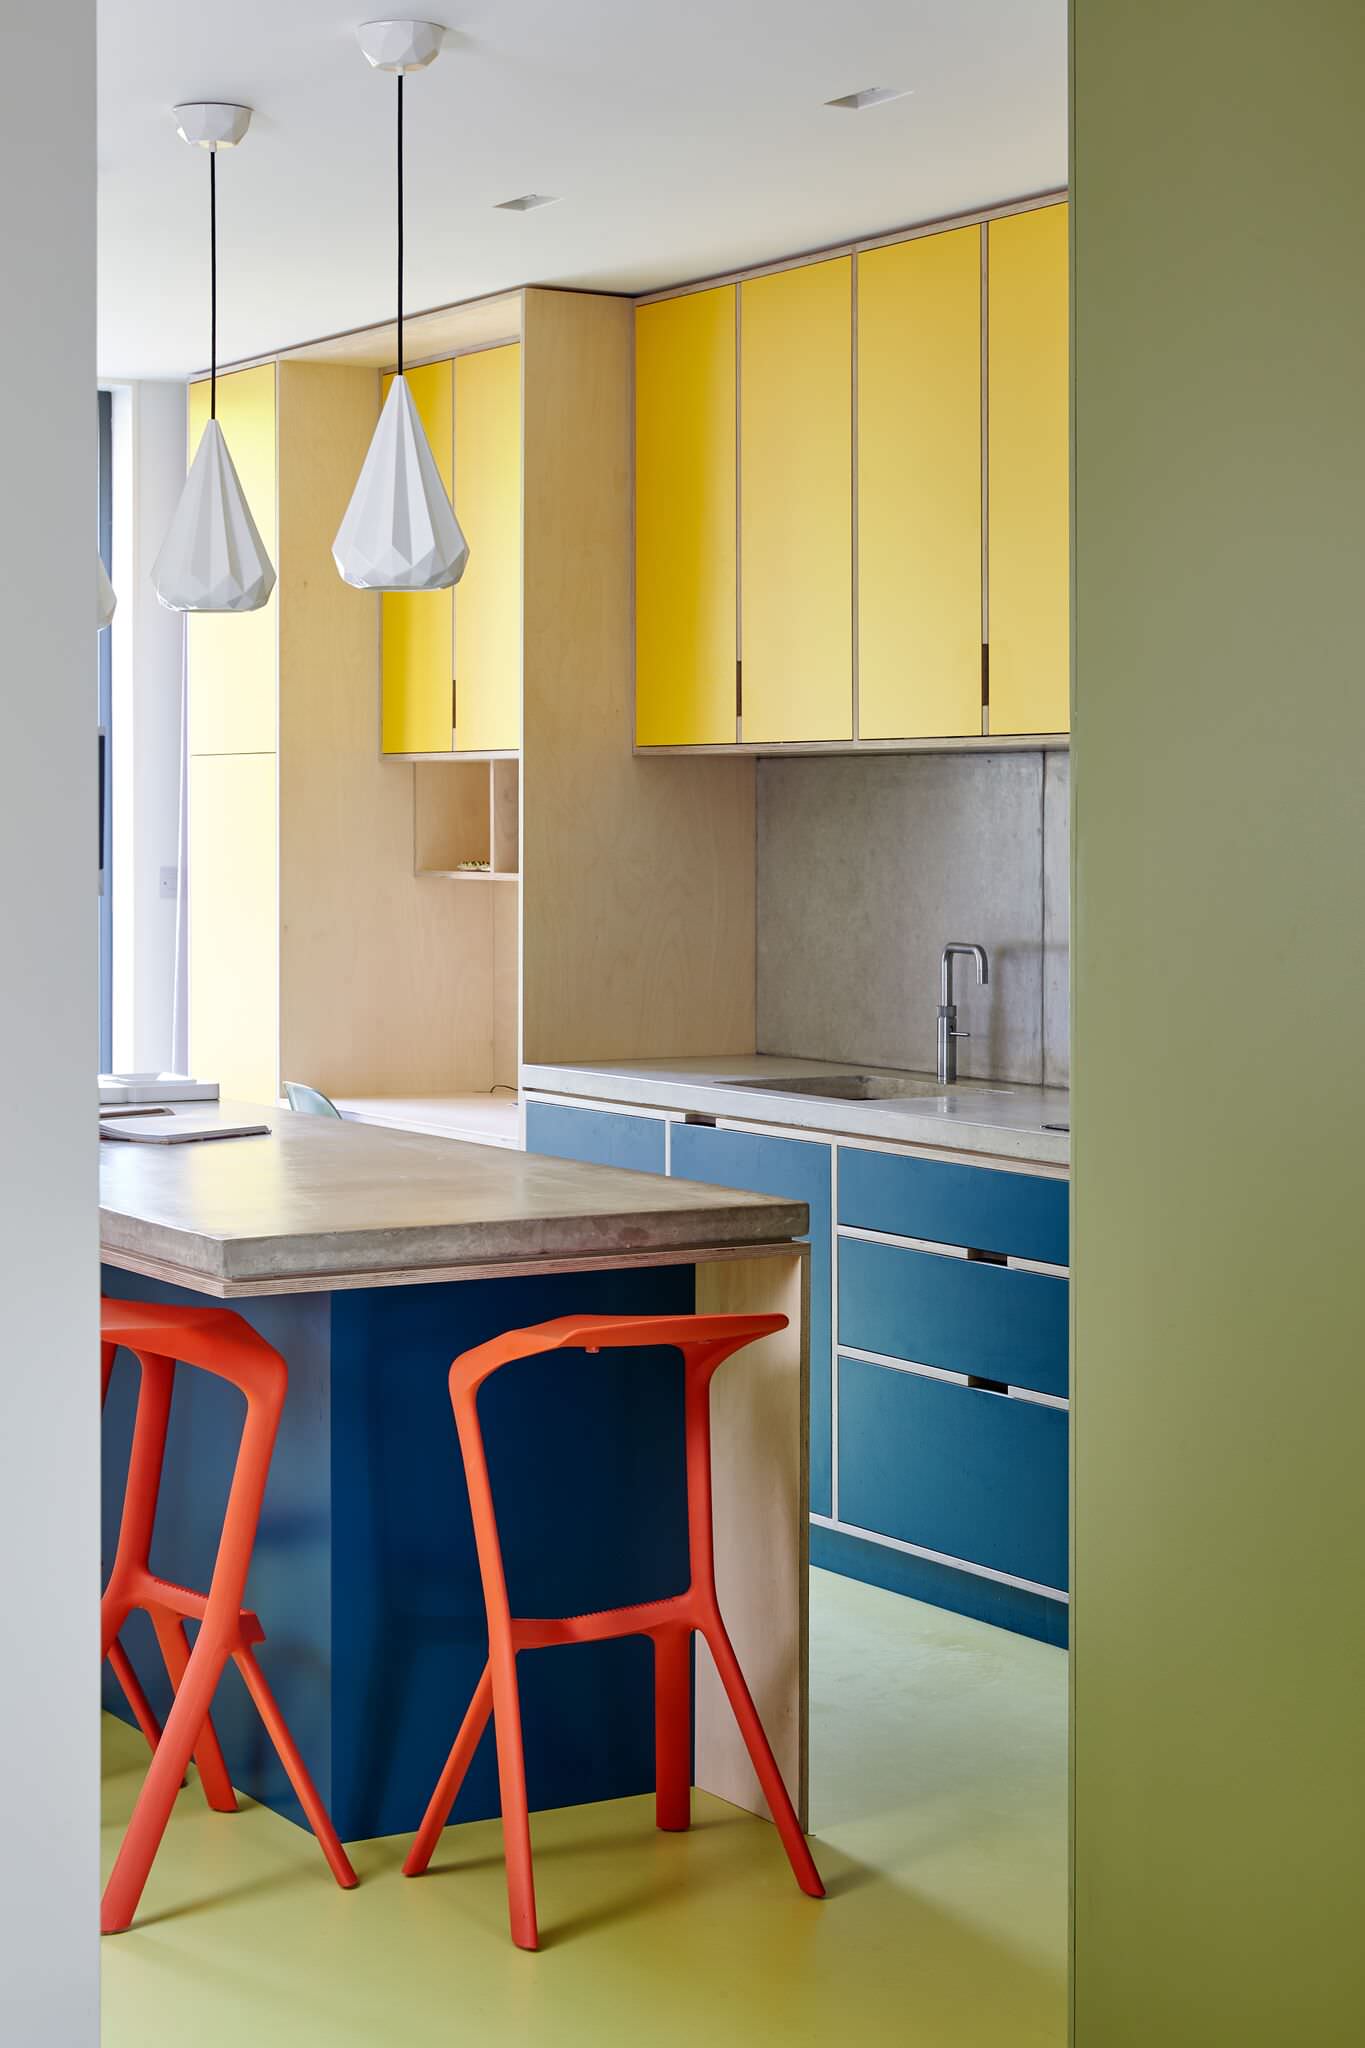 63+ Colorful Kitchen Ideas (JOYFUL & BRIGHT) - Beautiful Kitchen Design   Mexican style kitchens, Beautiful kitchen designs, Mexican kitchen decor